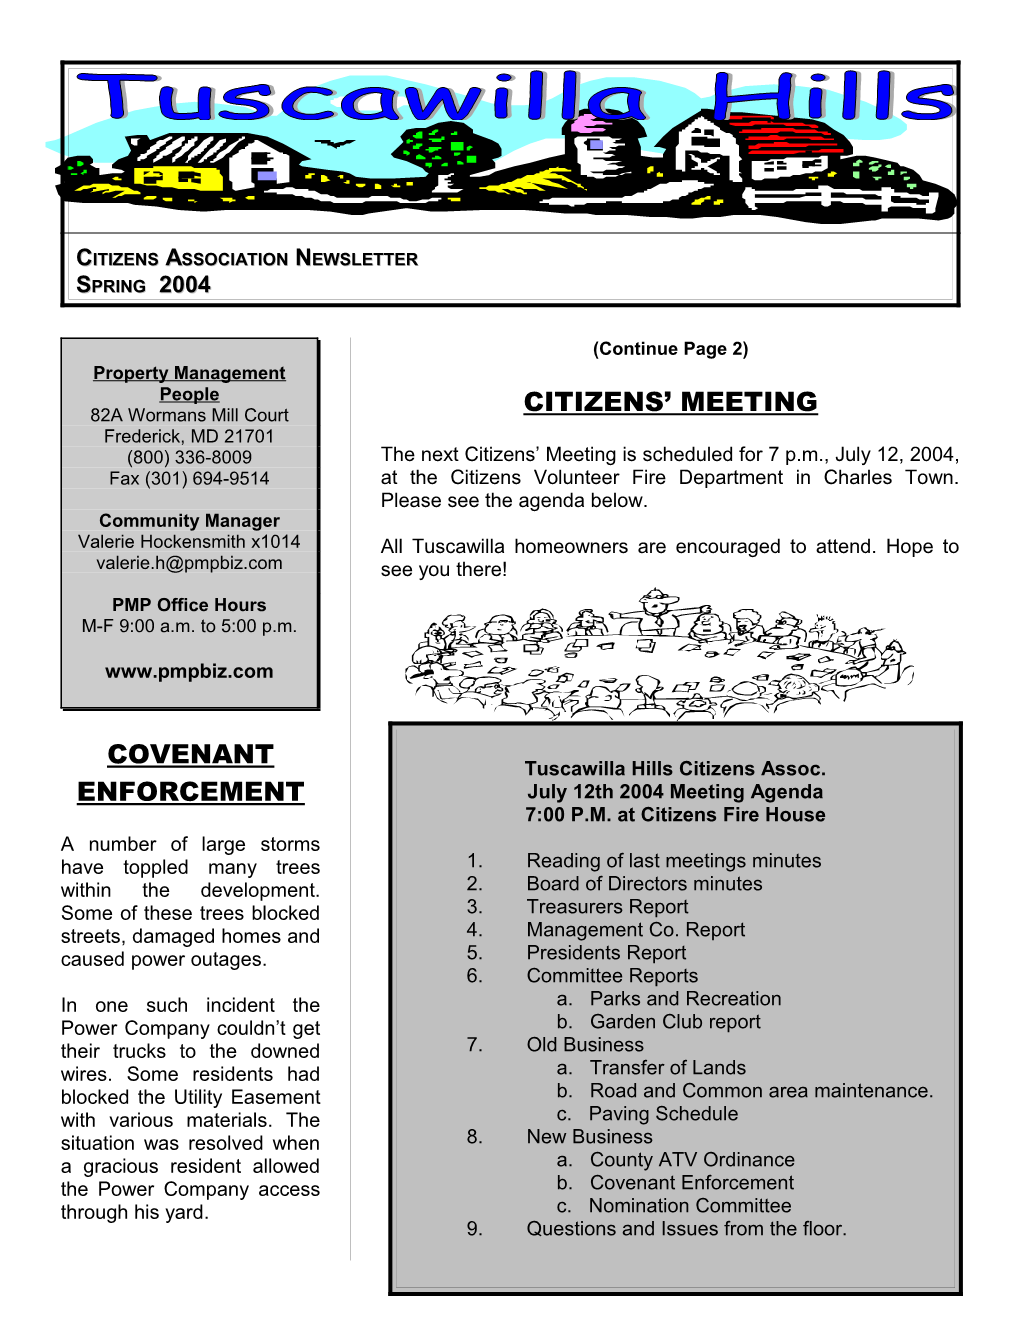 Citizens Association Newsletter Spring 2004